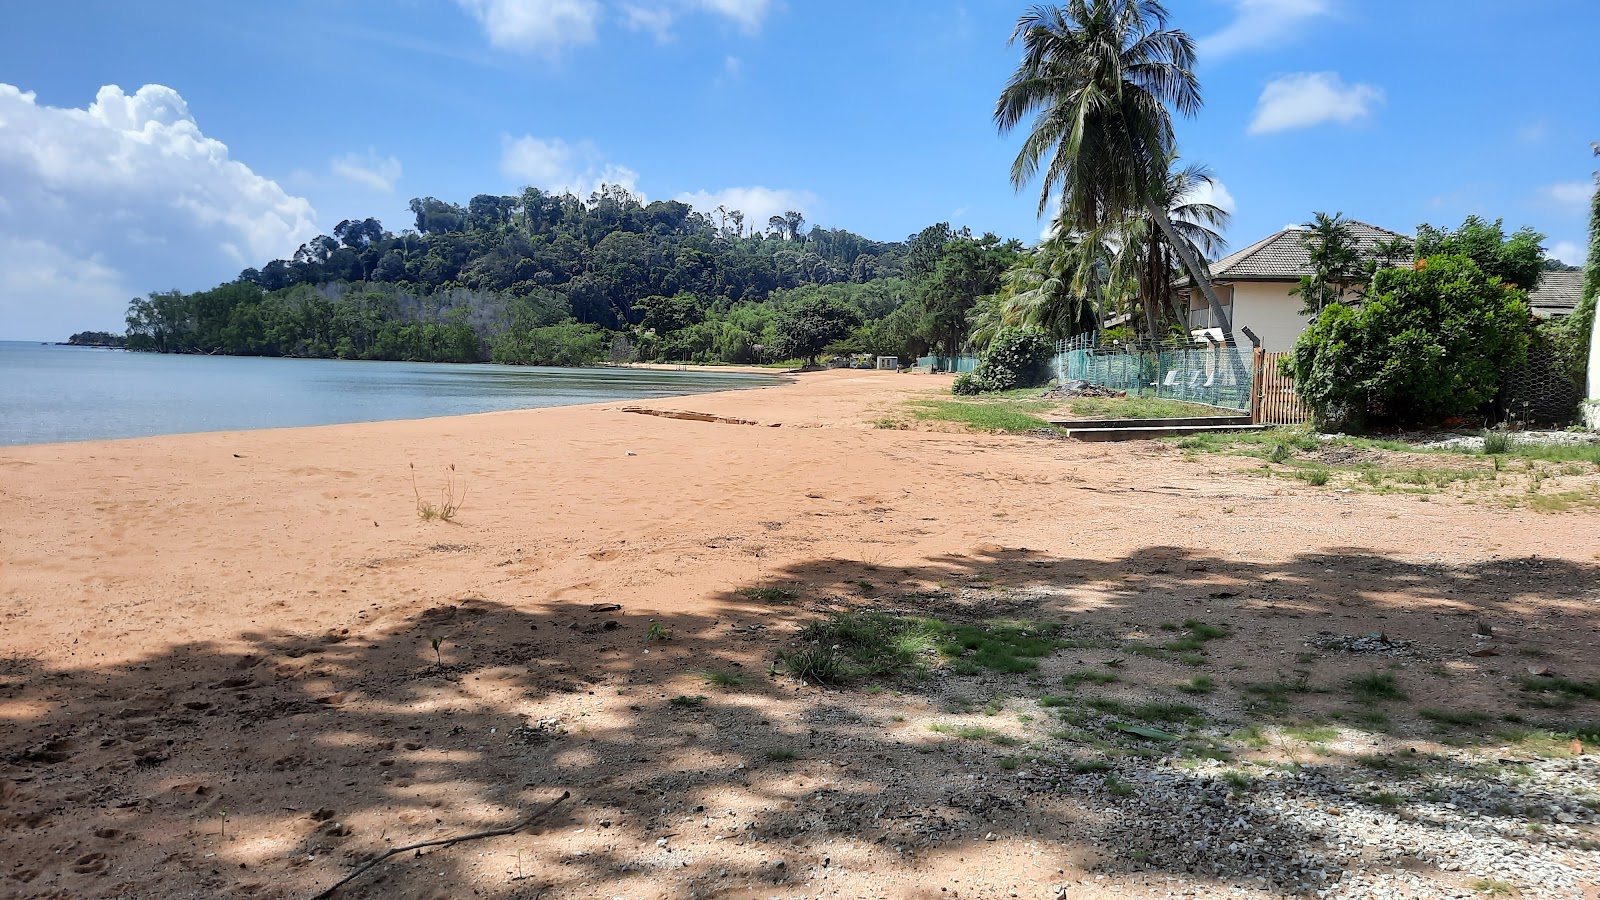 Foto de Cermin Beach - lugar popular entre los conocedores del relax